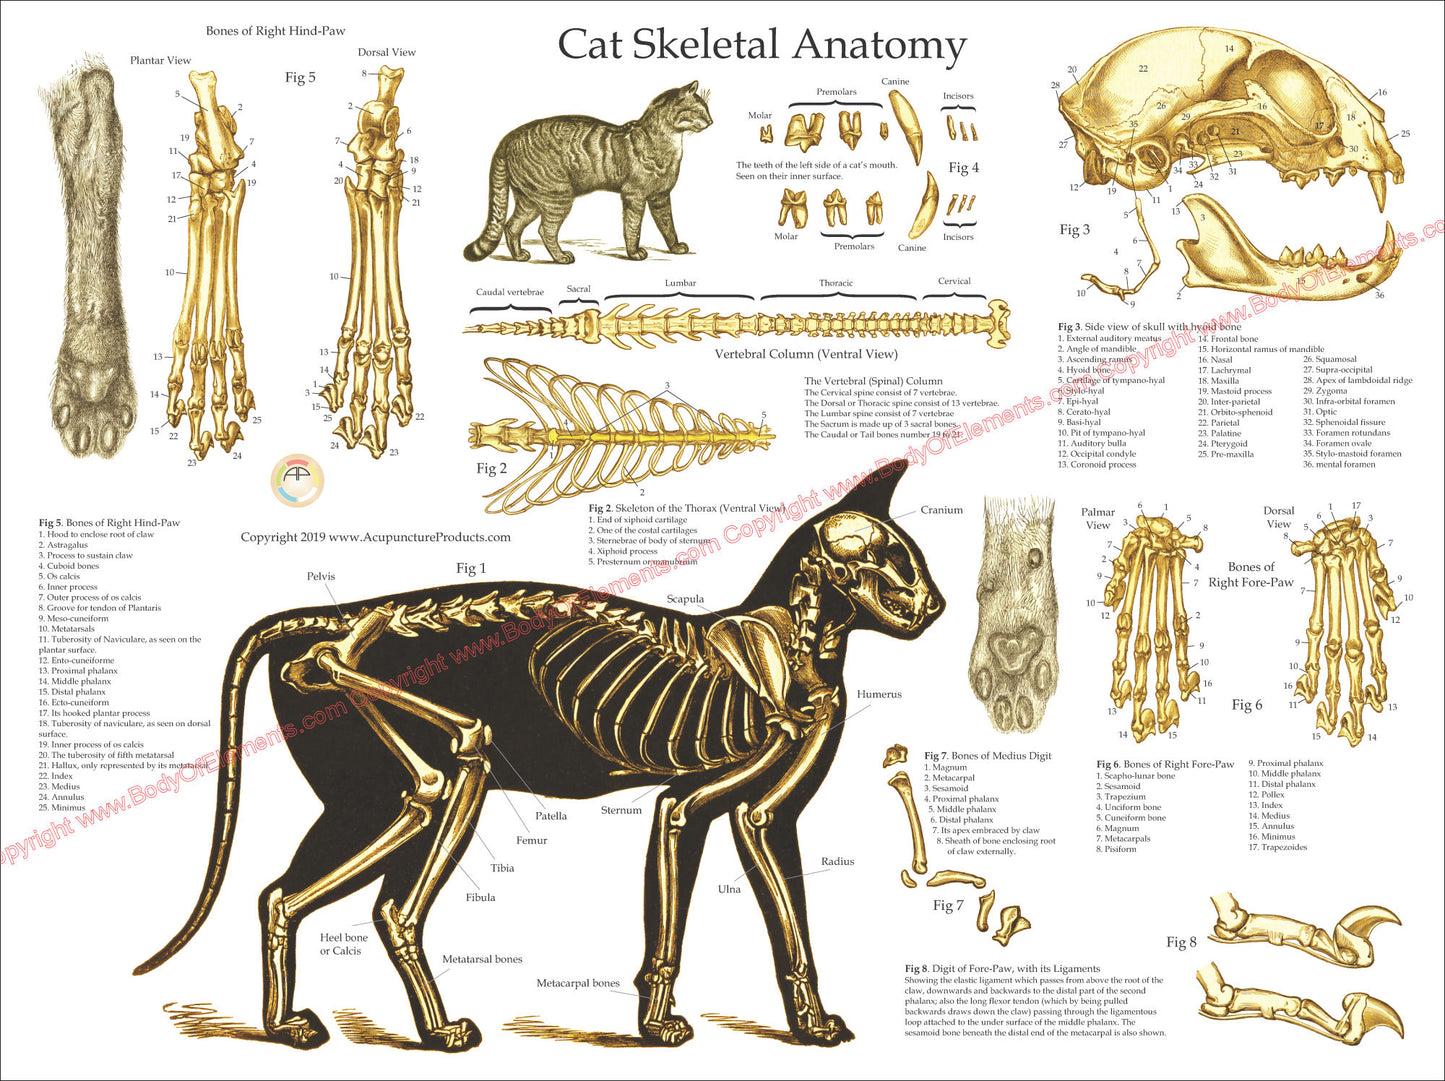 Cat feline skeletal anatomy wall chart